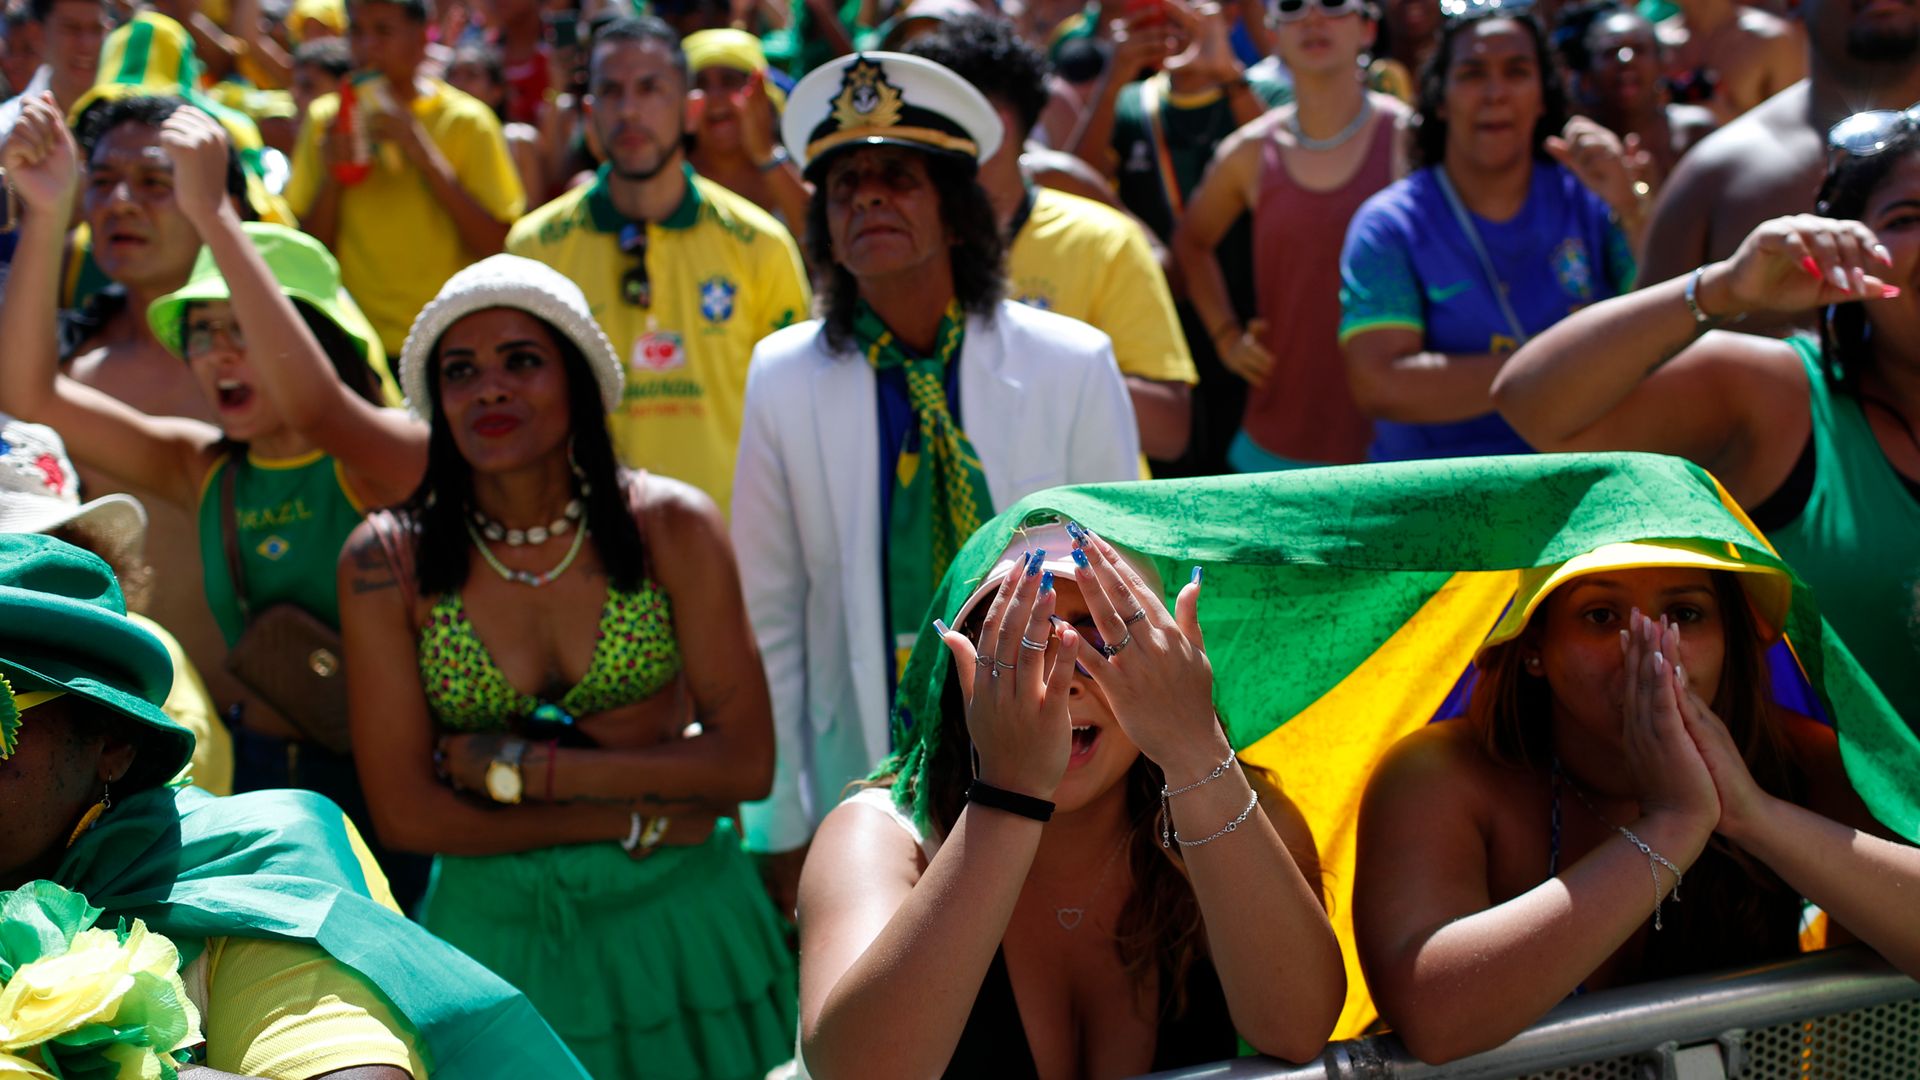 Brazil fans left in tears after shootout heartbreak